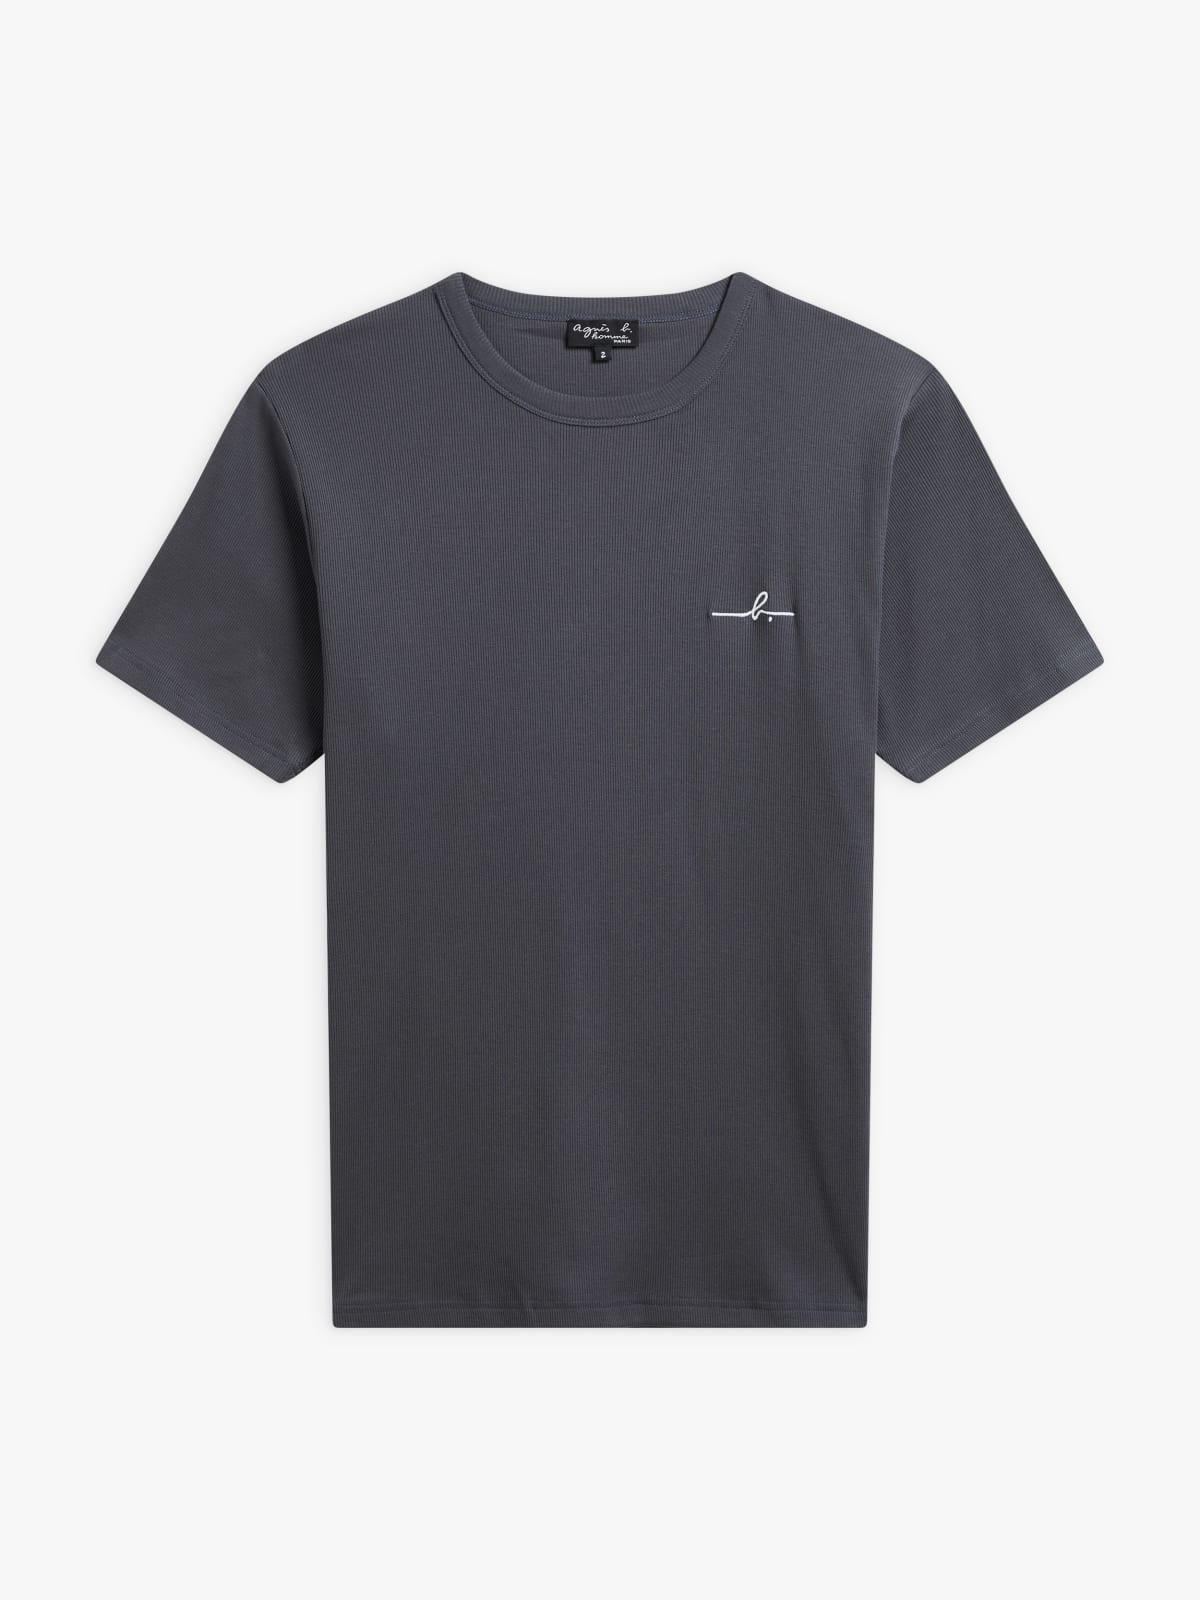 grey cotton "b" logo Brando t-shirt